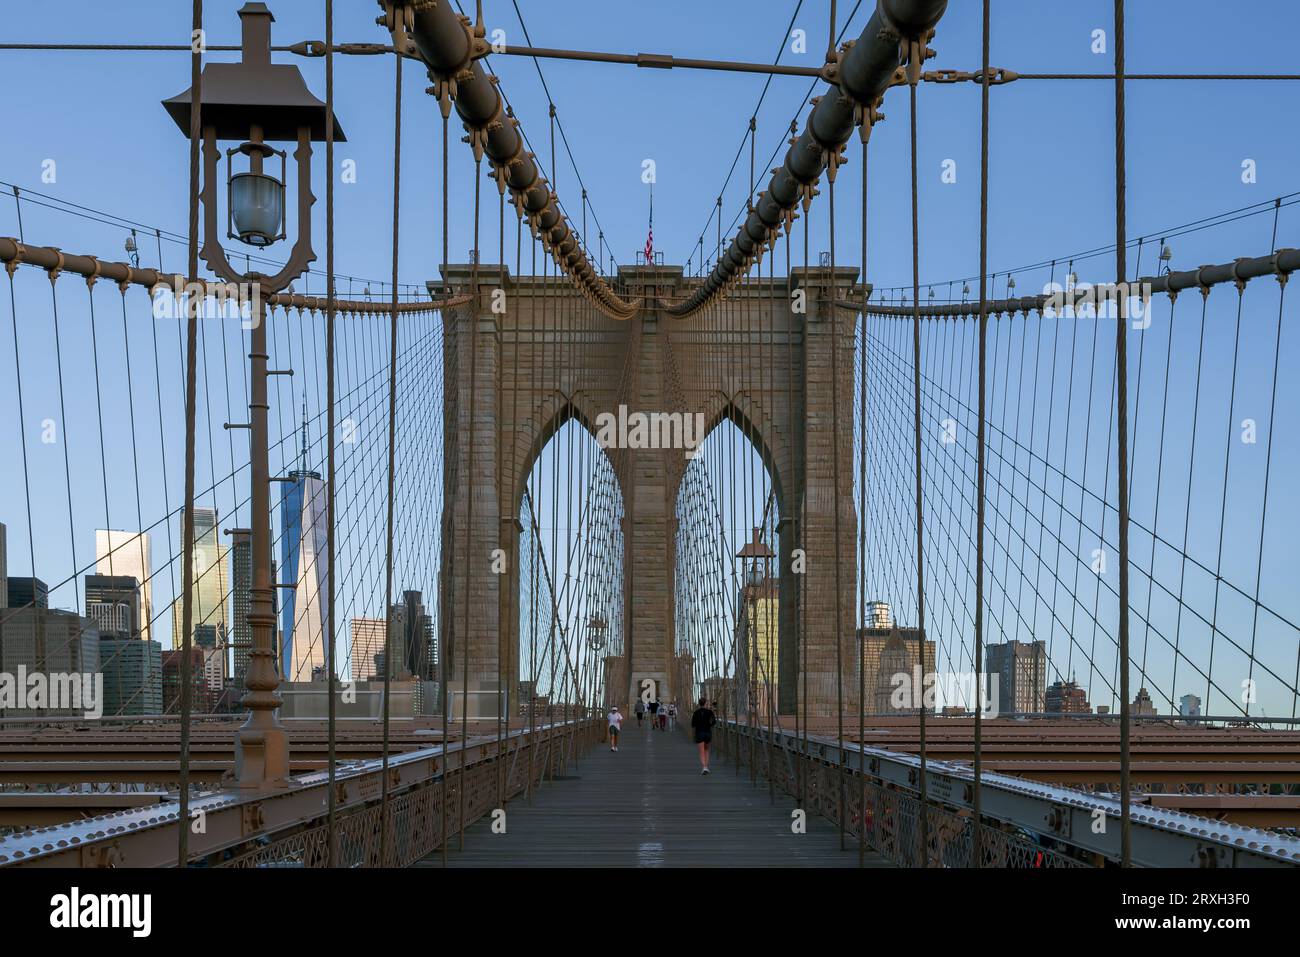 Einzigartiger Blick auf die Brooklyn Bridge, die Brooklyn mit Manhattan verbindet. Dies ist eine zweistöckige Brücke für Wanderer, Busse, Autos und LKWs. Stockfoto